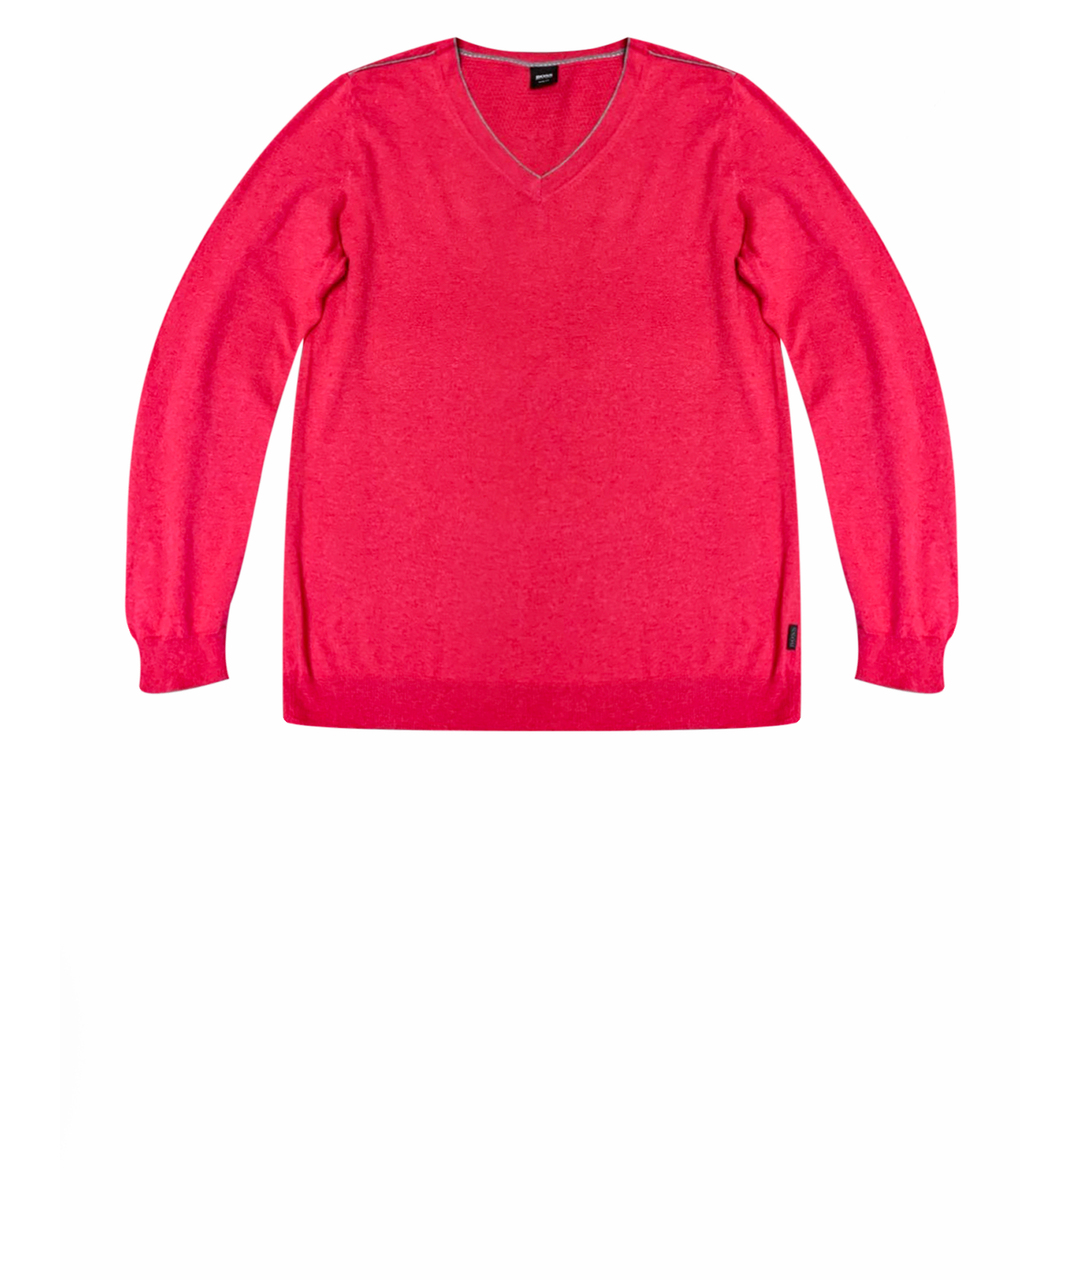 HUGO BOSS Розовый шерстяной джемпер / свитер, фото 1